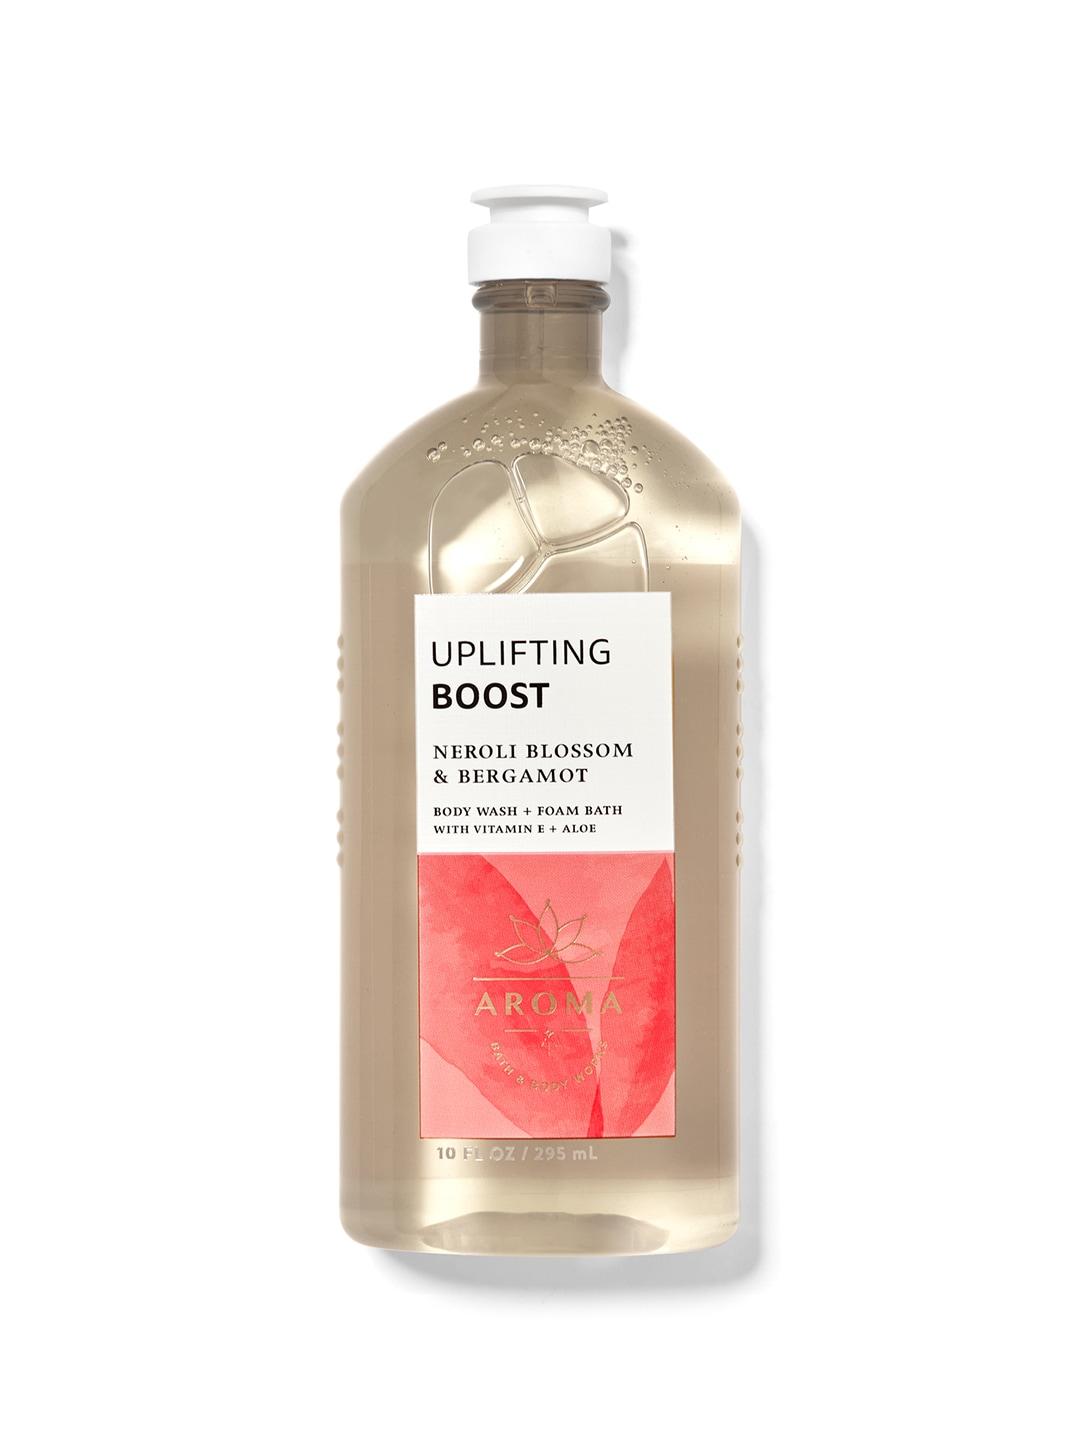 Bath & Body Works Uplifting Boost Neroli Blossom & Bergamot Body Wash + Foam Bath - 295ml